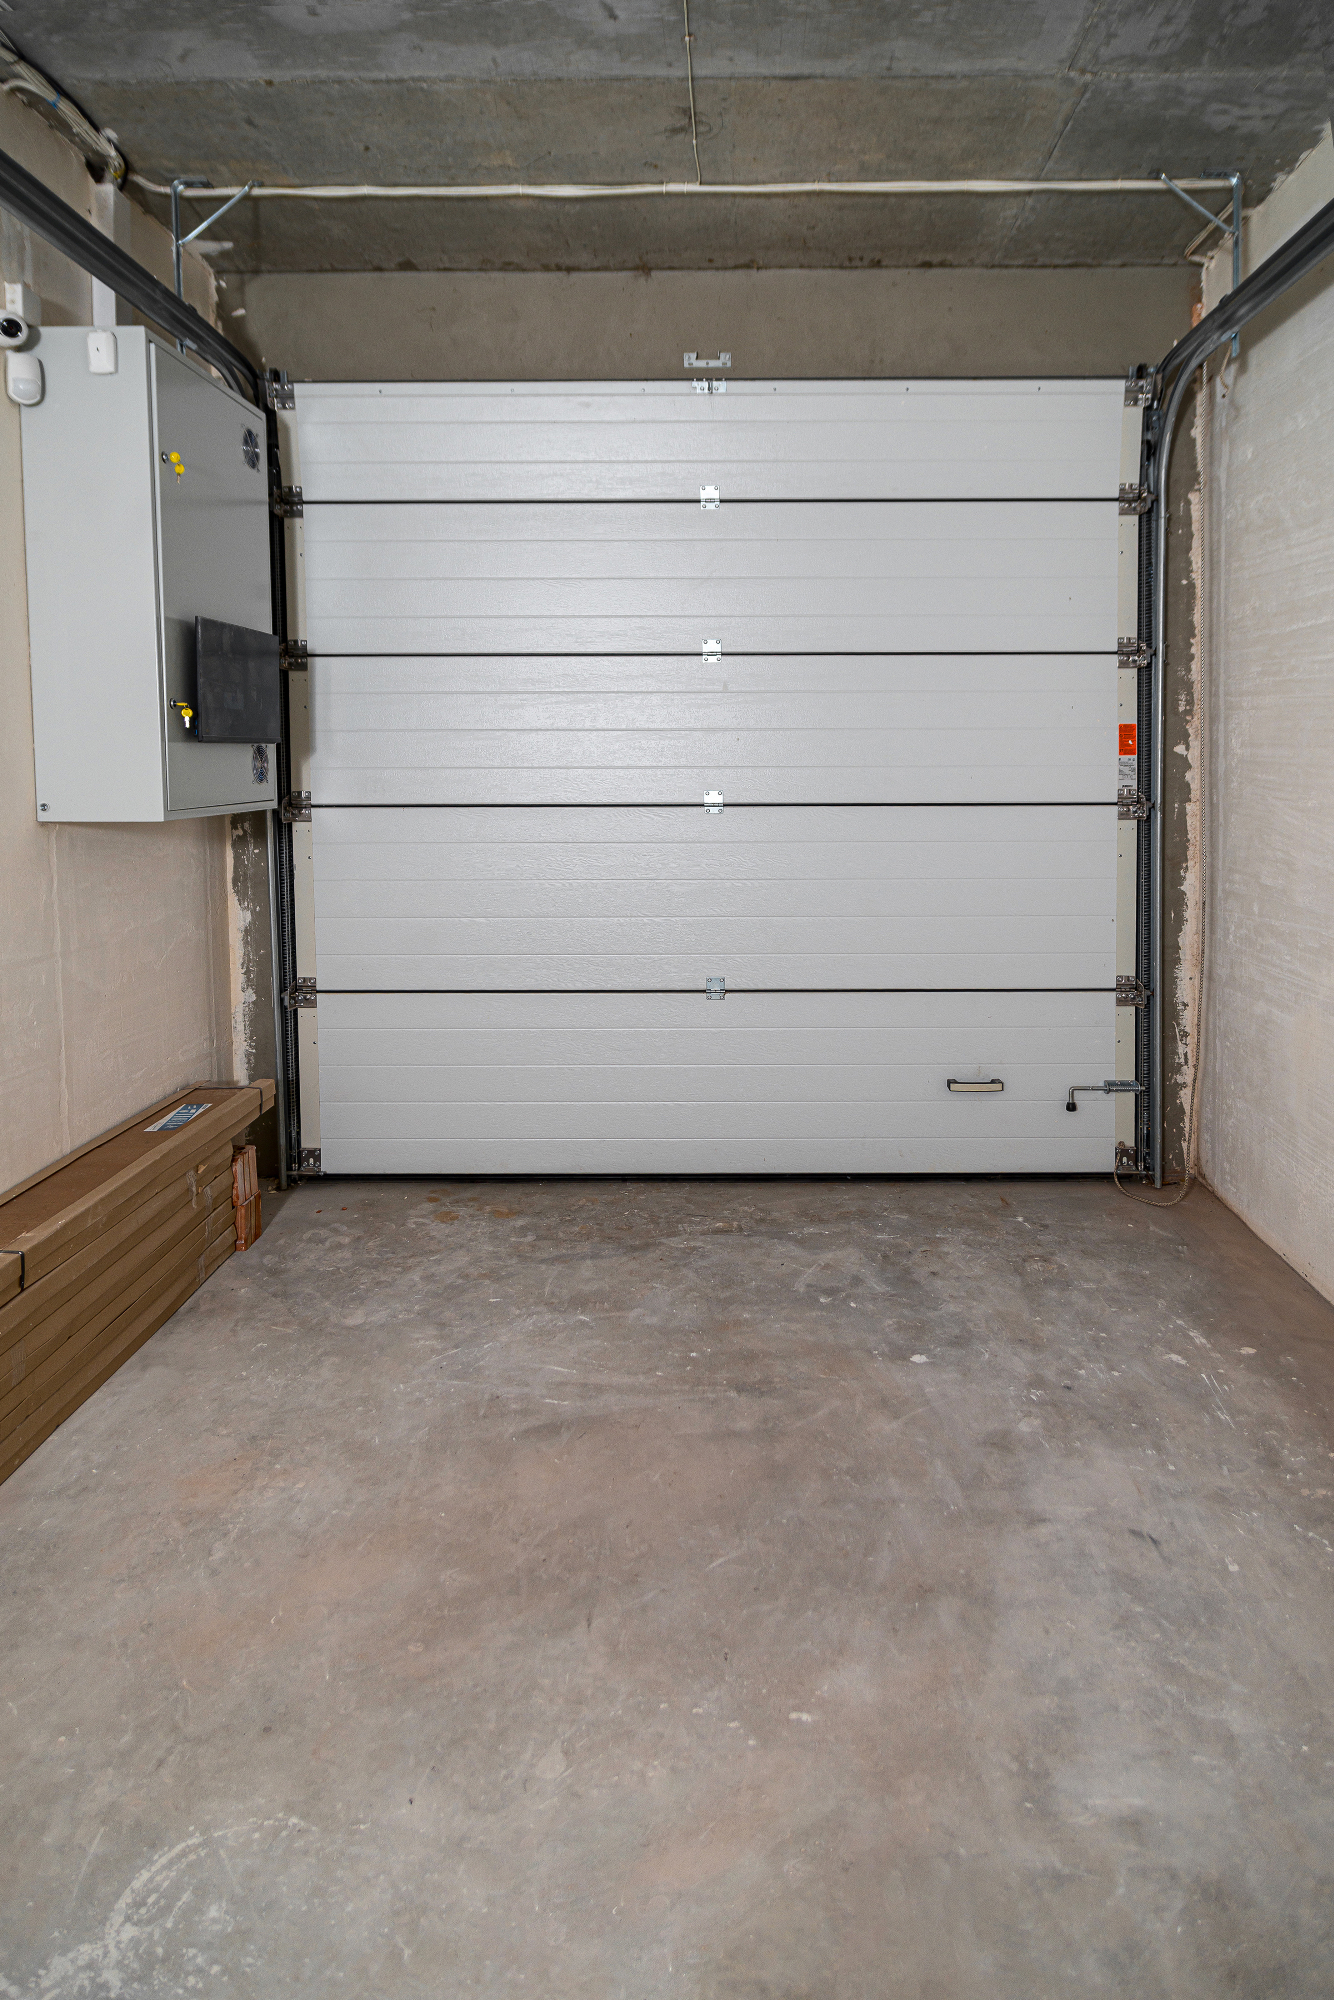 Garažna vrata so bila še zadnji element naše renovacije hiše